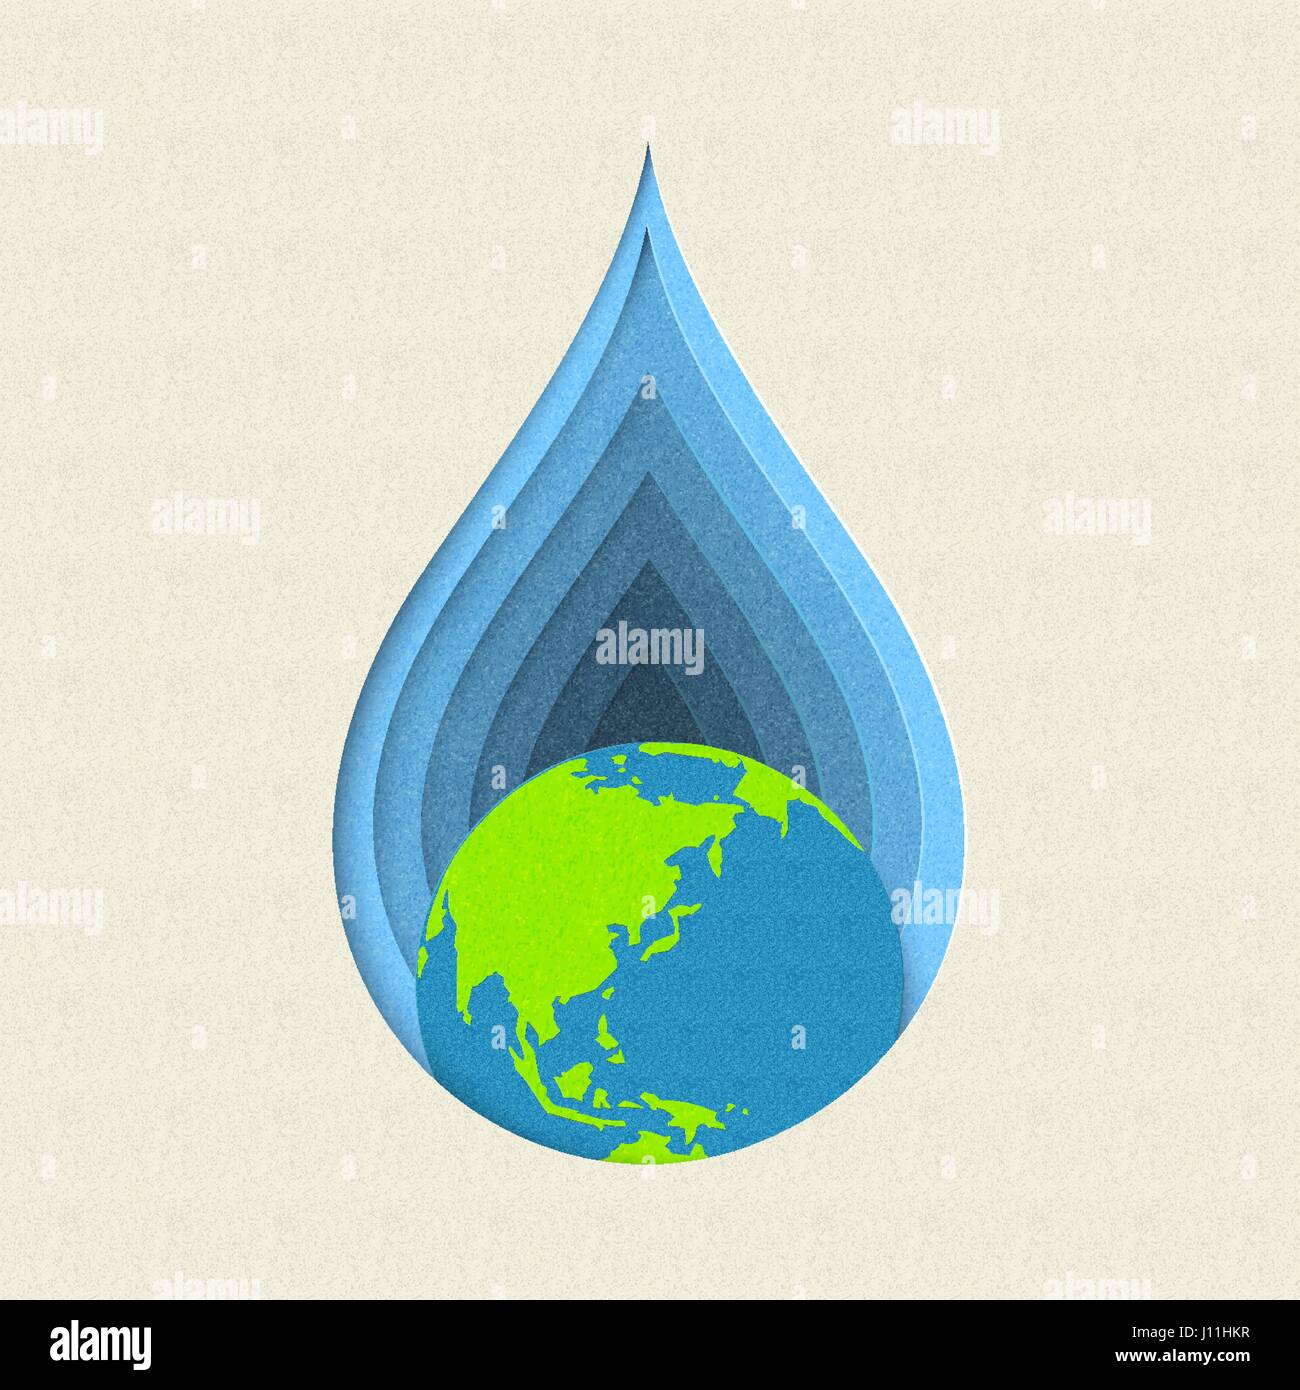 Le jour de la terre papier coupé concept illustration pour l'eau potable et de soins de la préservation de l'environnement. Vecteur EPS10. Illustration de Vecteur